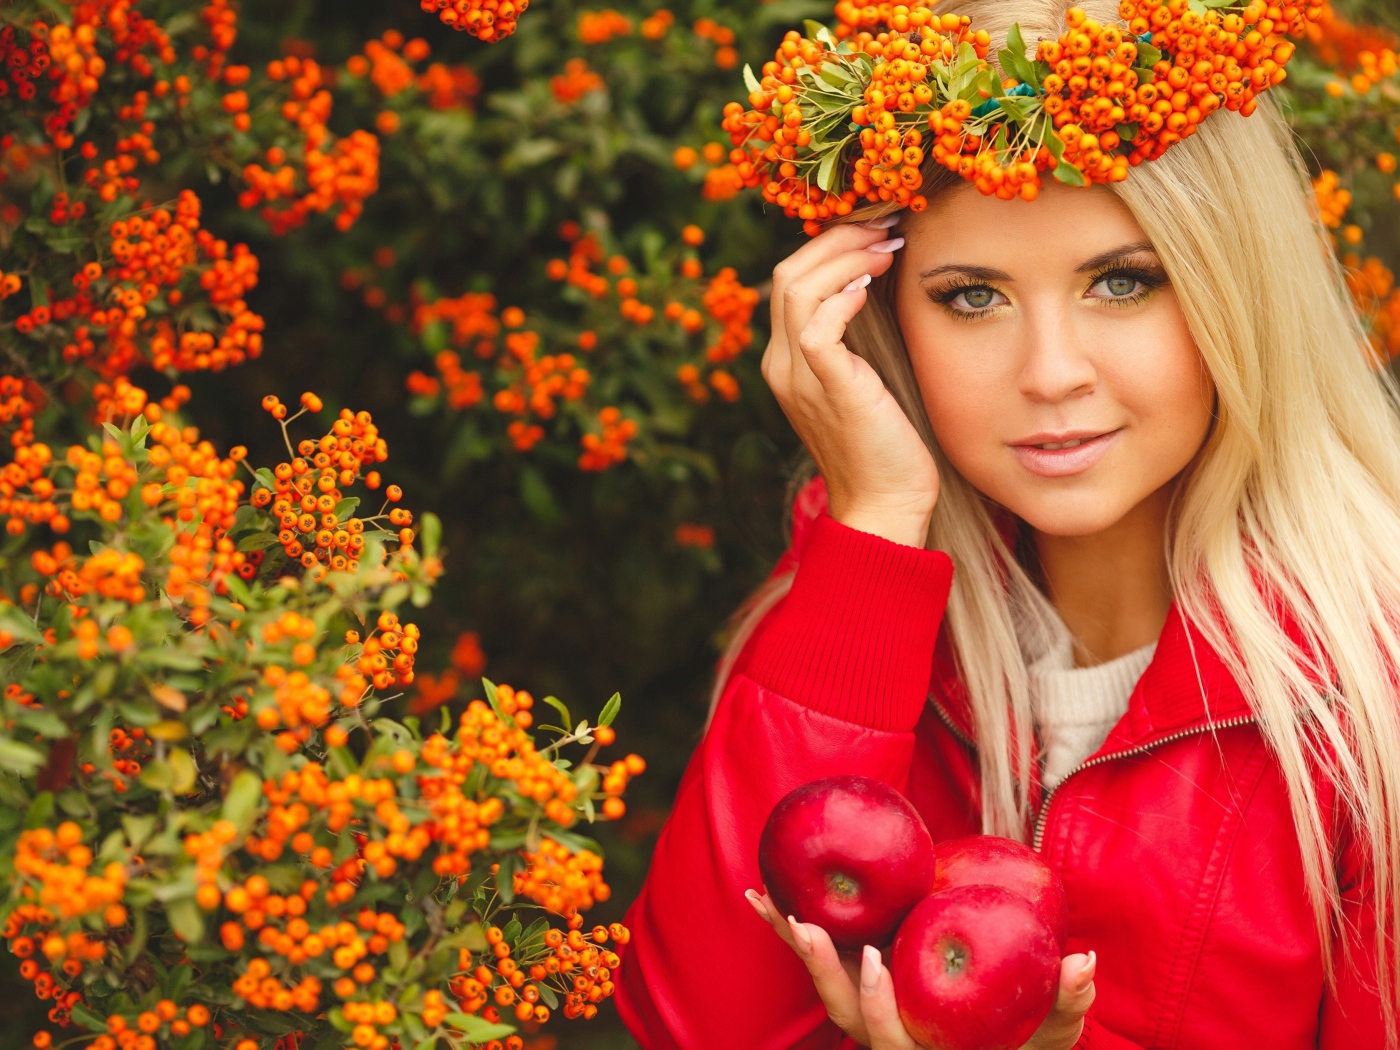 Красивая девушка с венком из рябины на голове и с красными яблоками в руках 